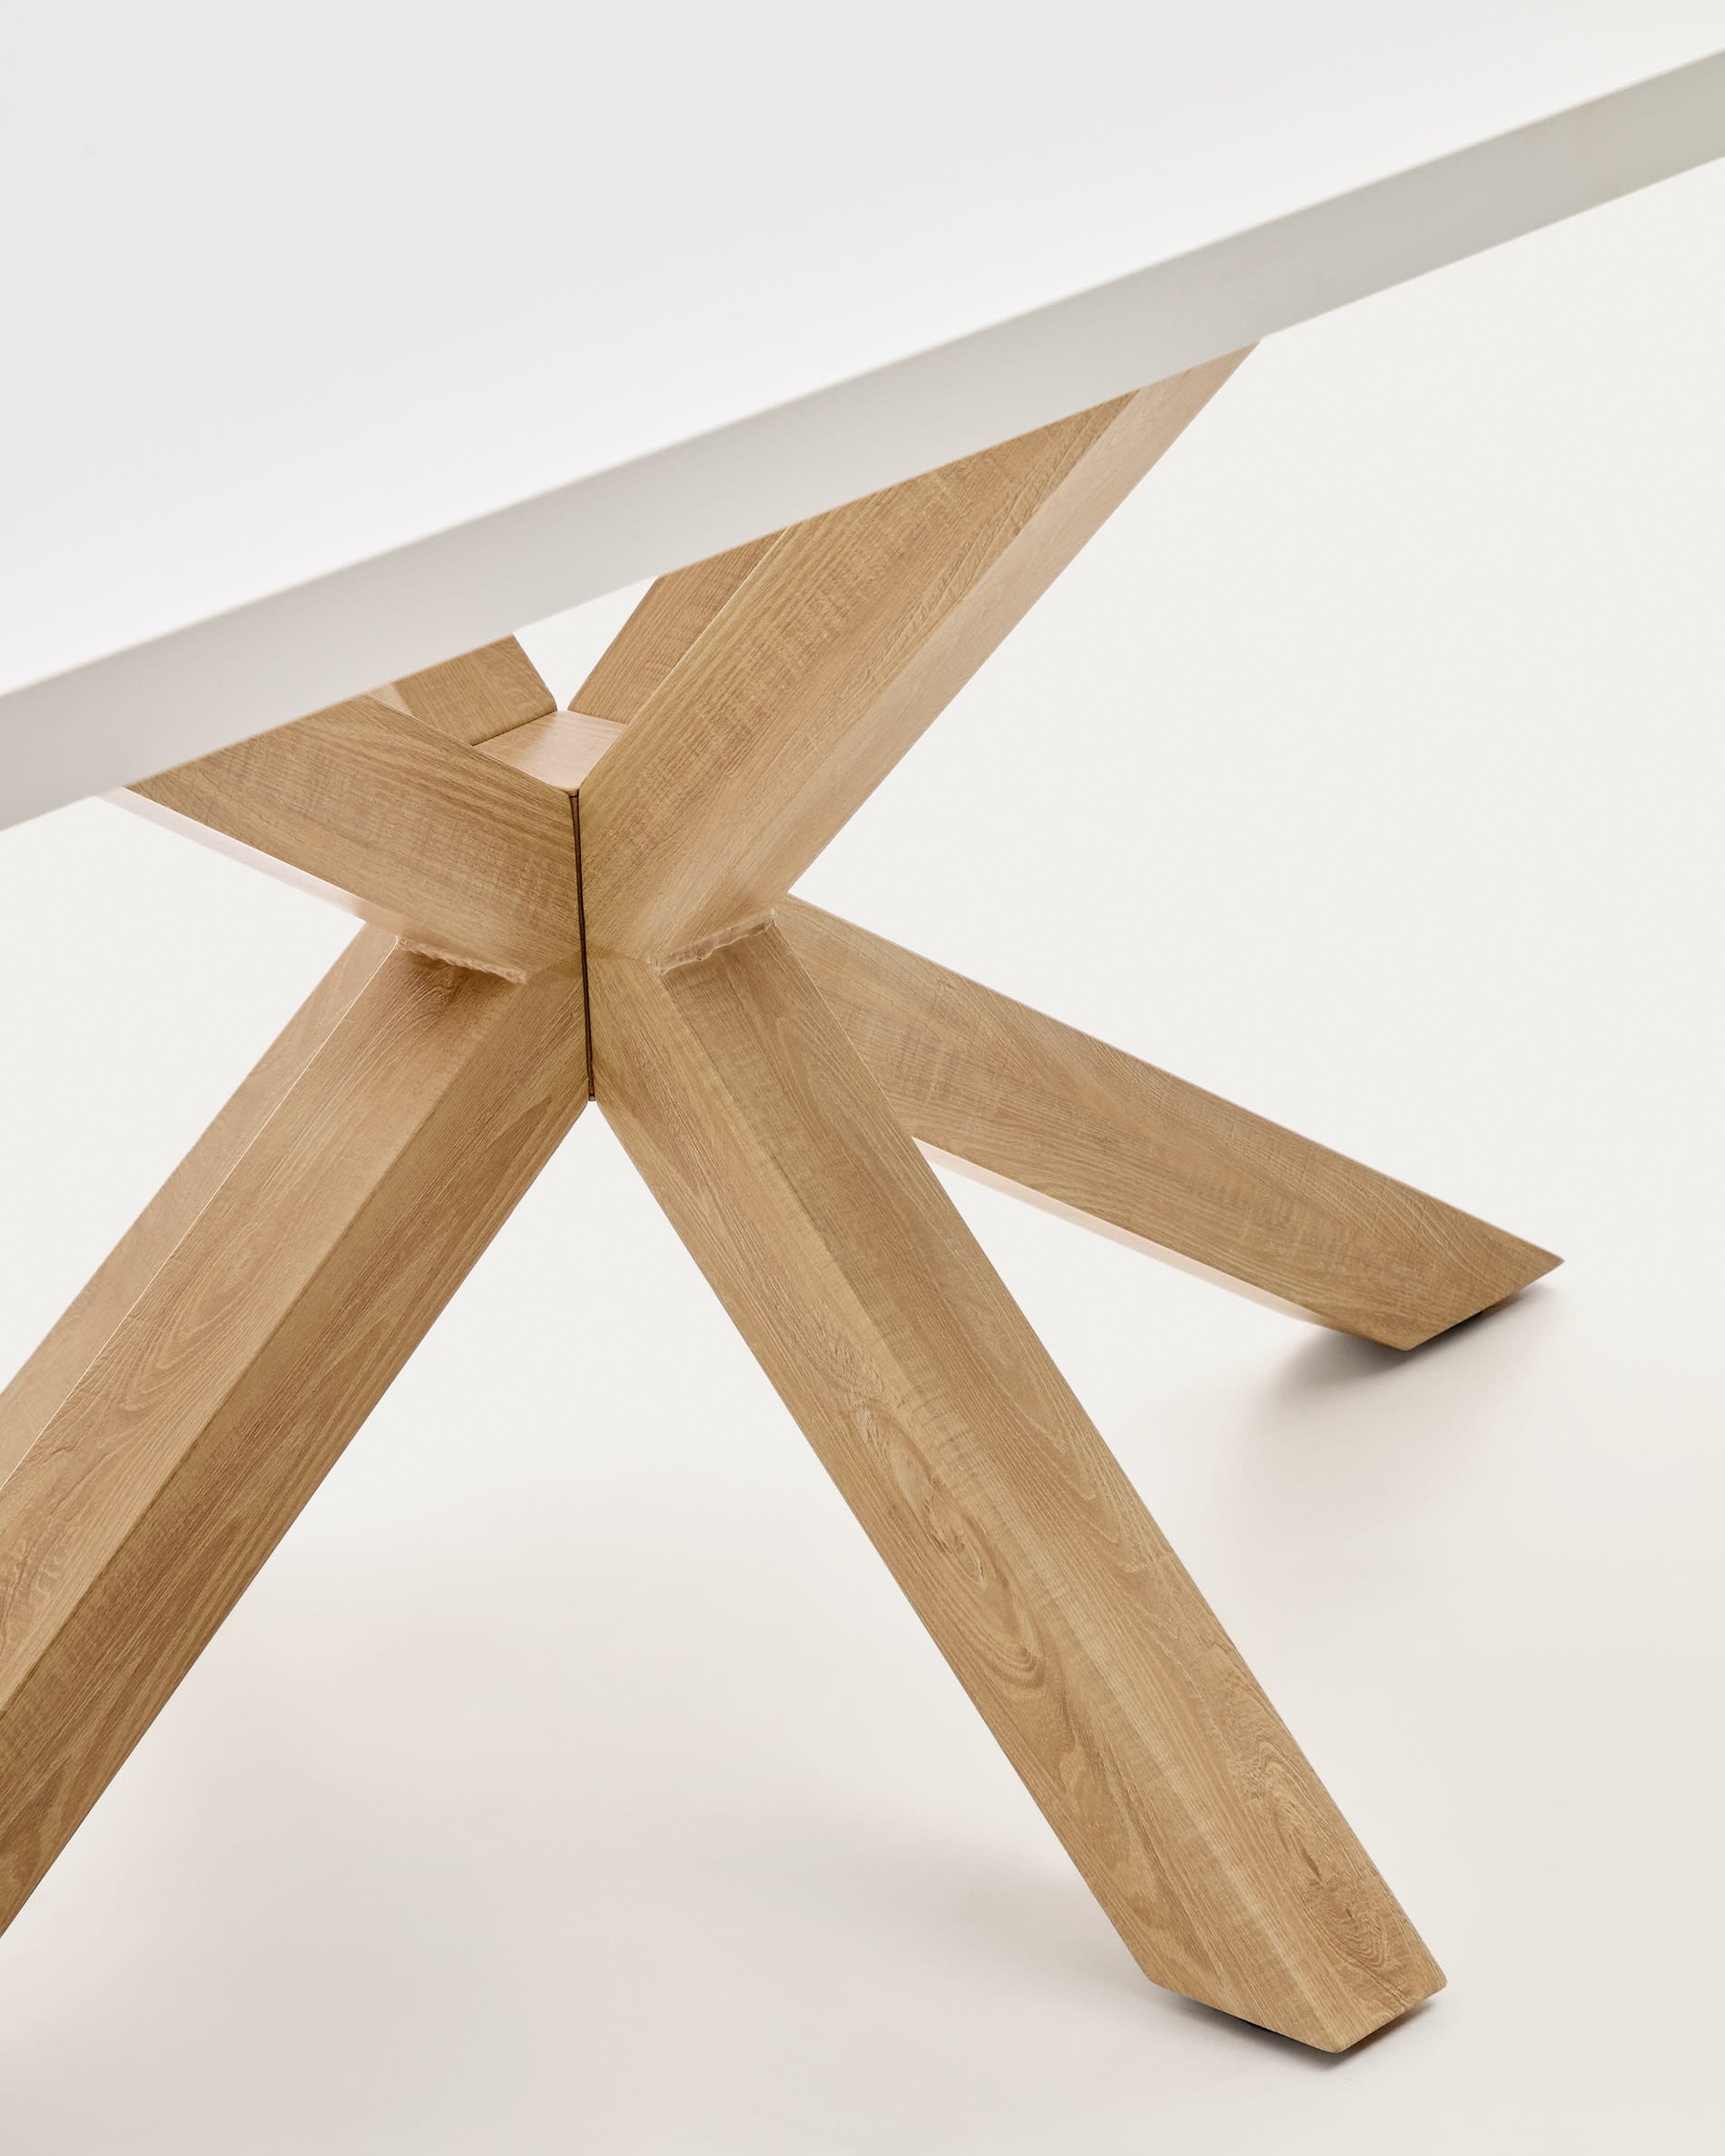 Argo asztal melaminból fehér bevonattal és fa hatású acél lábakkal, 180 x 100 cm